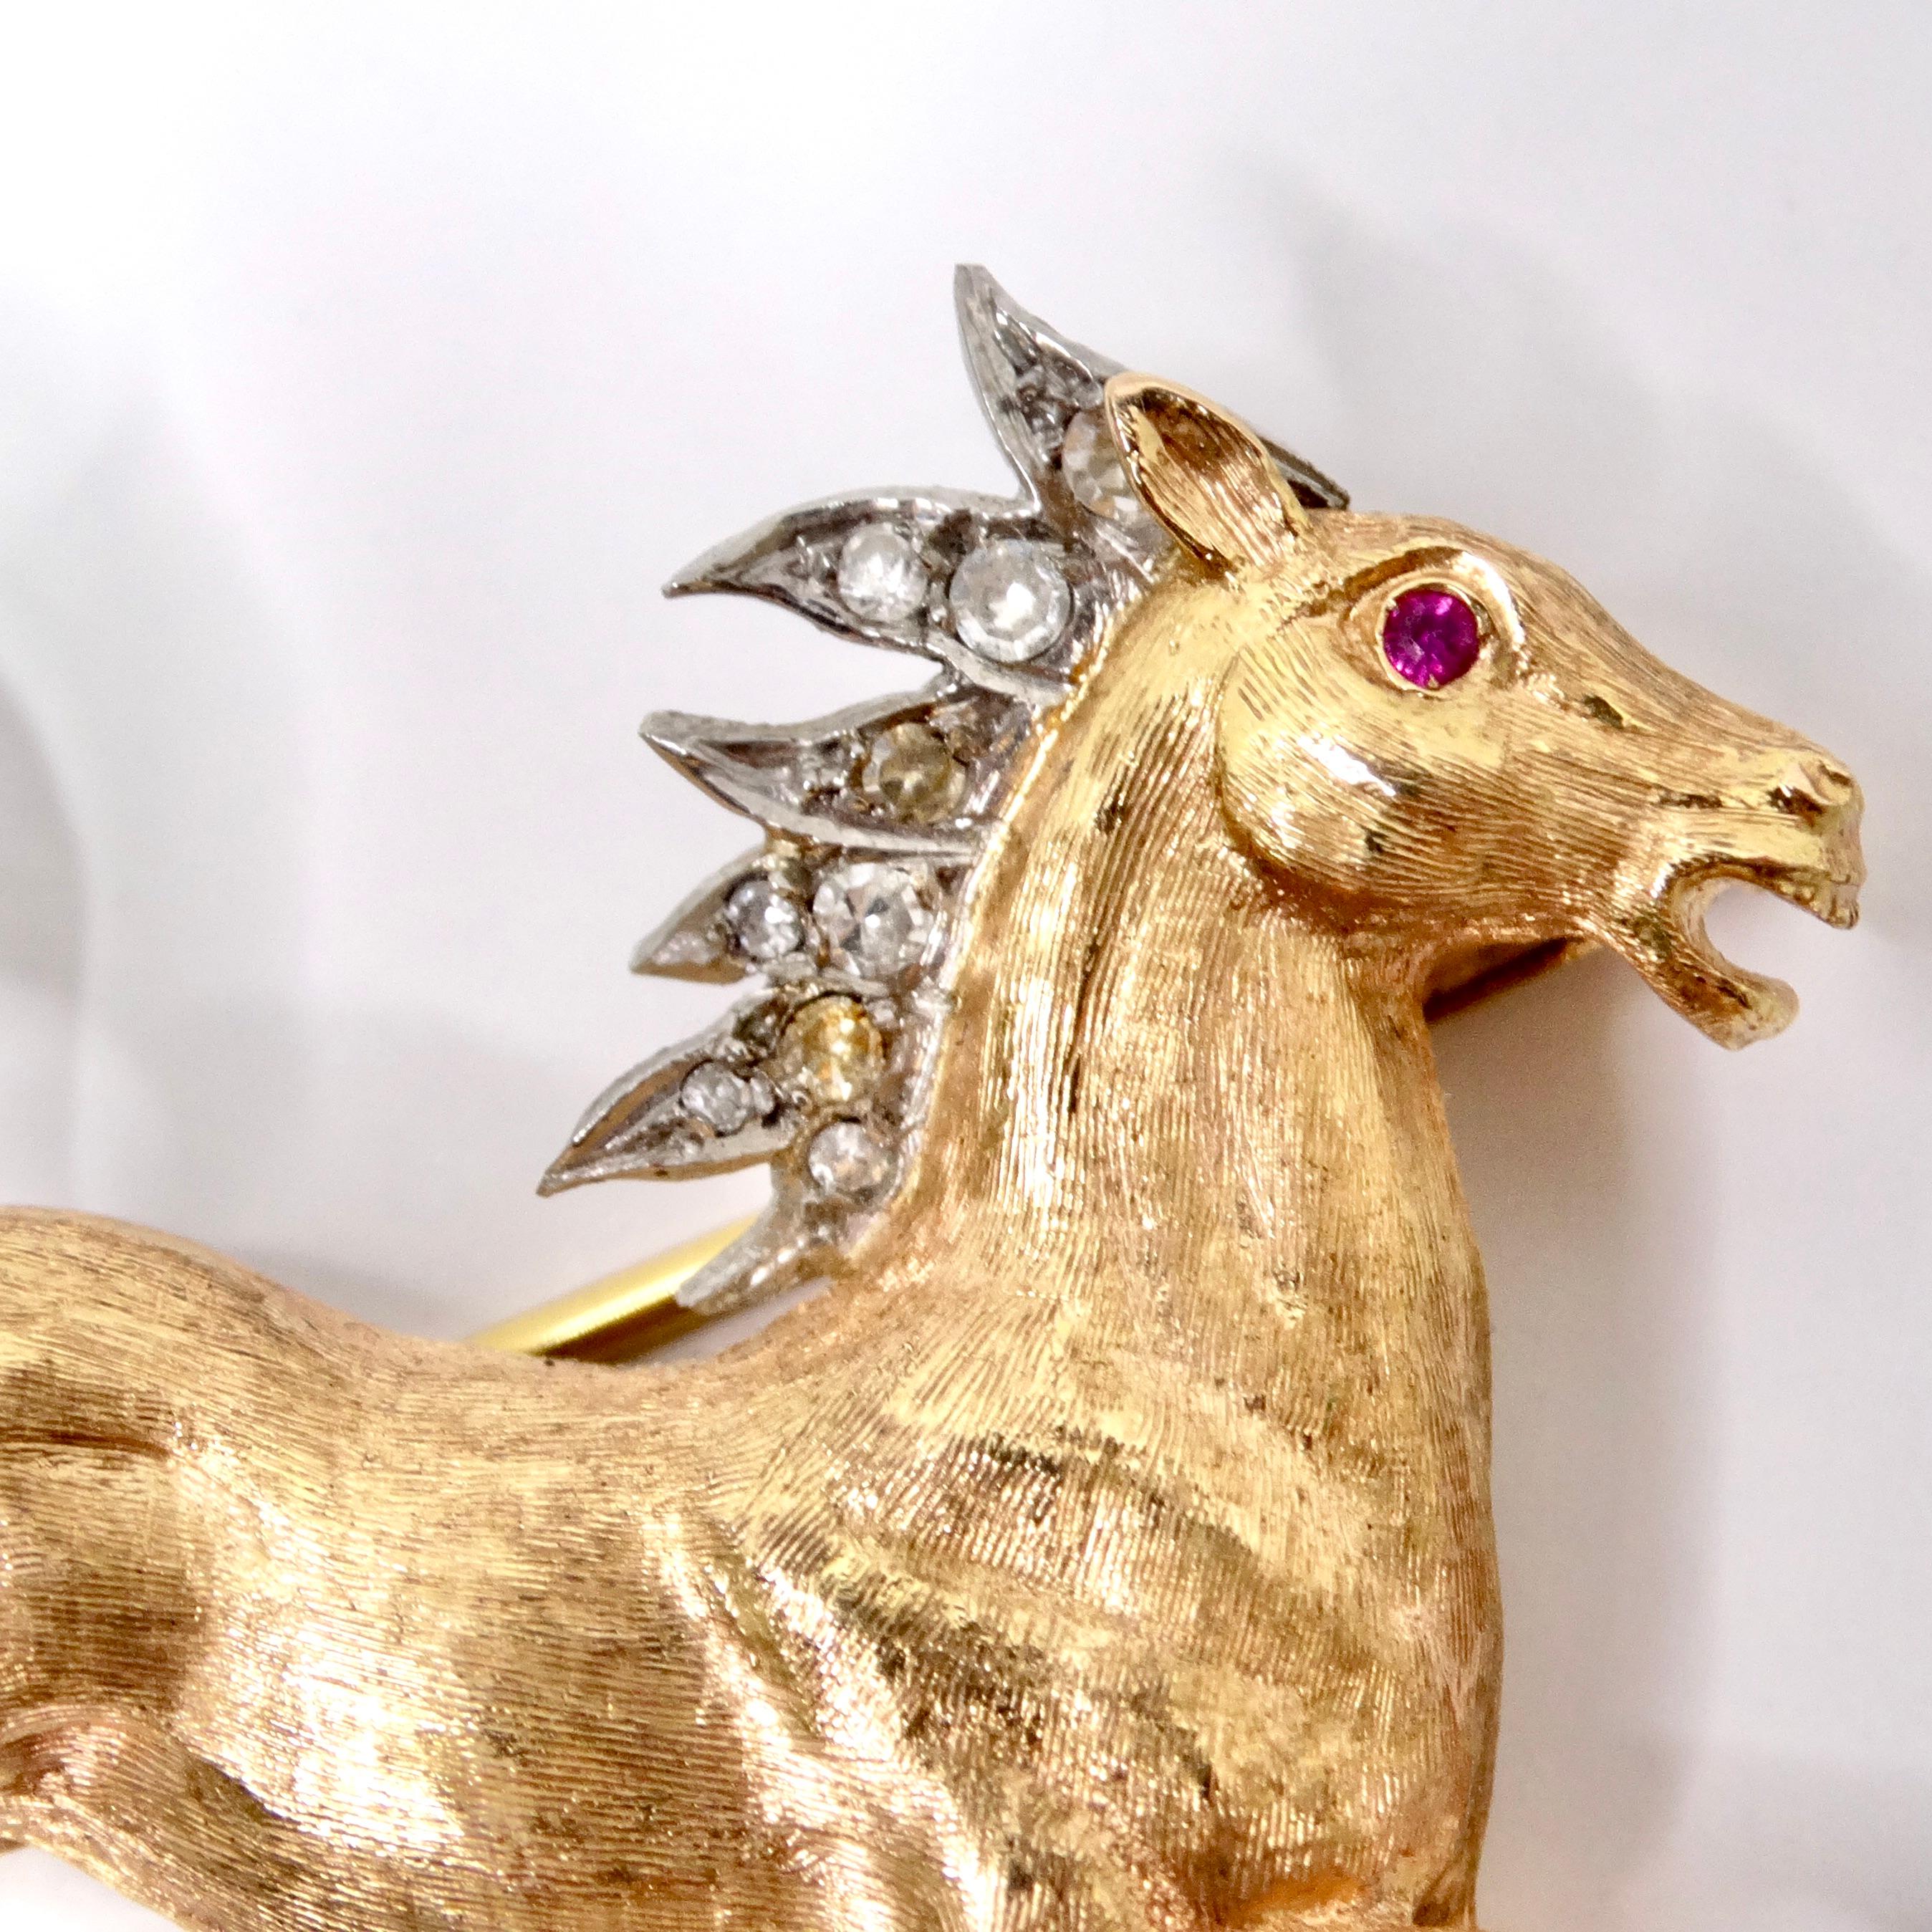 By Vintage présente l'exquise épingle à cheval en or 18 carats sertie de diamants, une superbe broche vintage qui respire l'élégance et le luxe intemporels. Fabriquée dans les années 1940, cette broche en or jaune et blanc bicolore en forme de